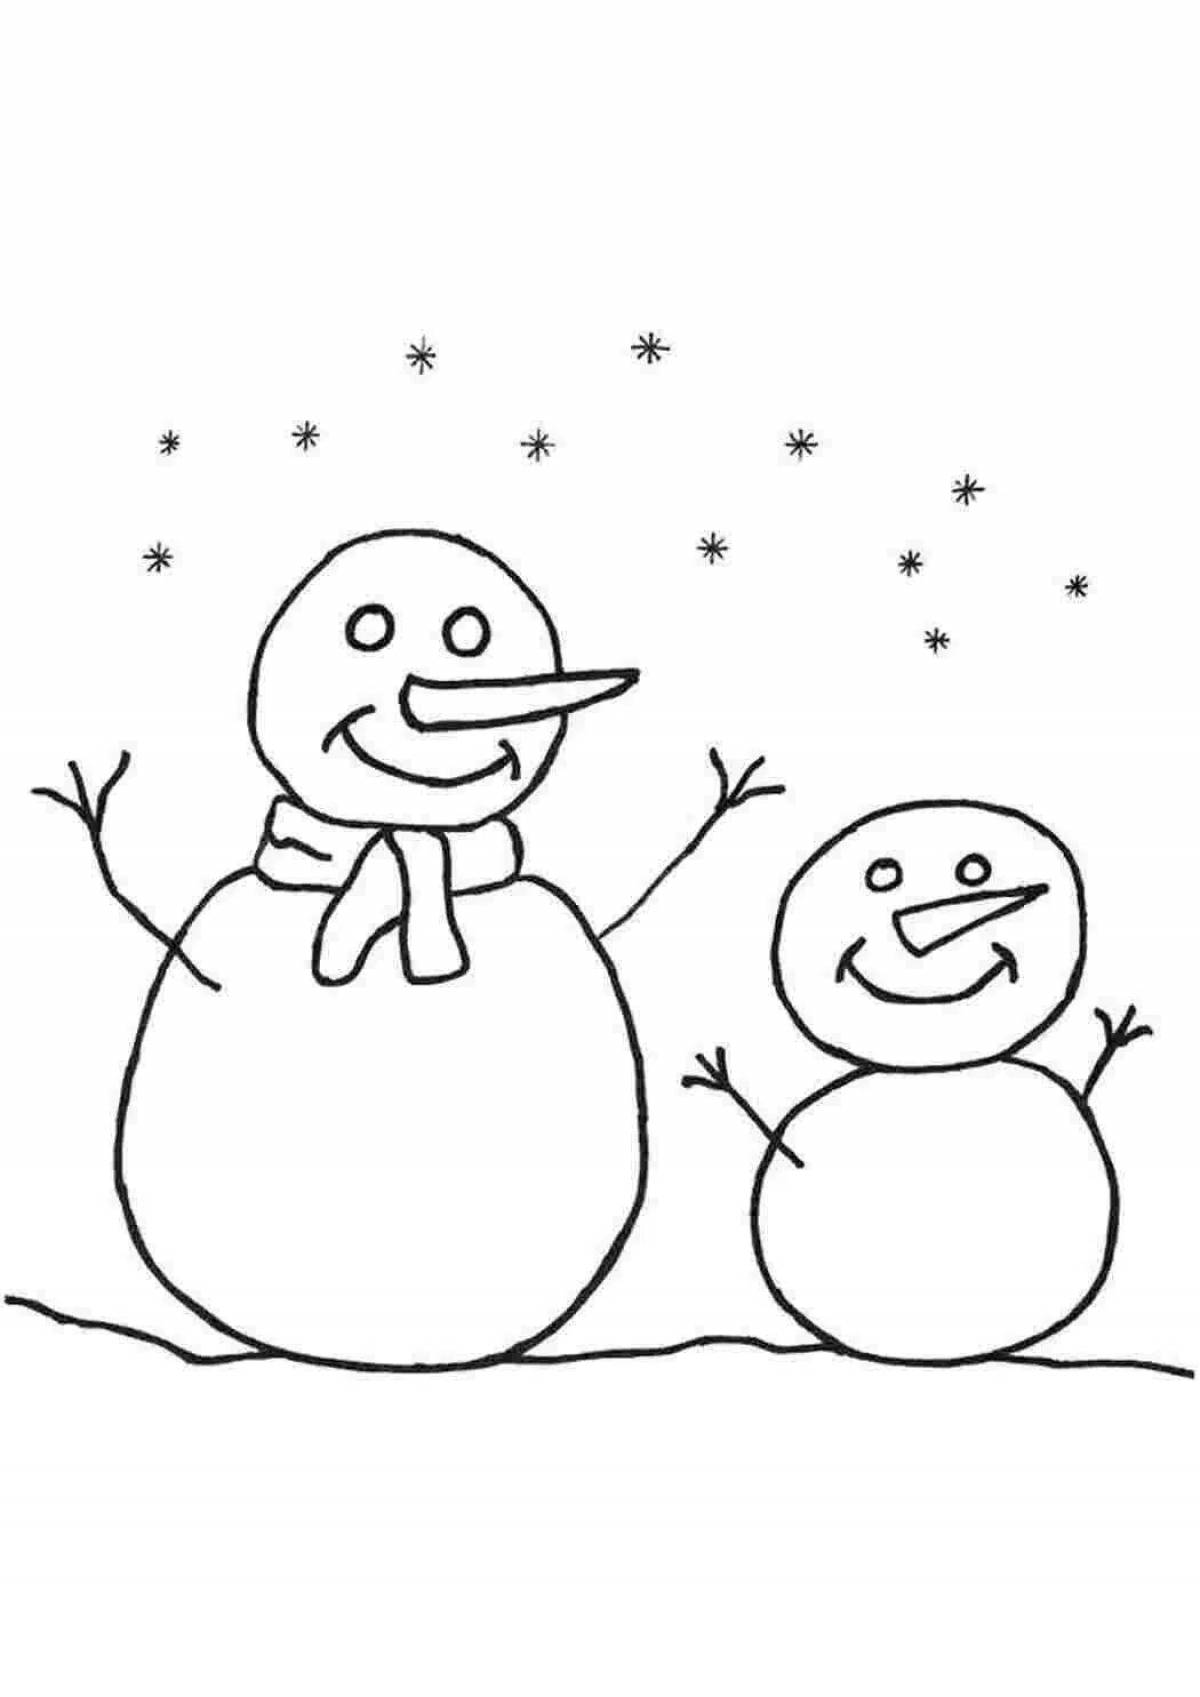 Юмористическая раскраска снеговик для детей 5 6